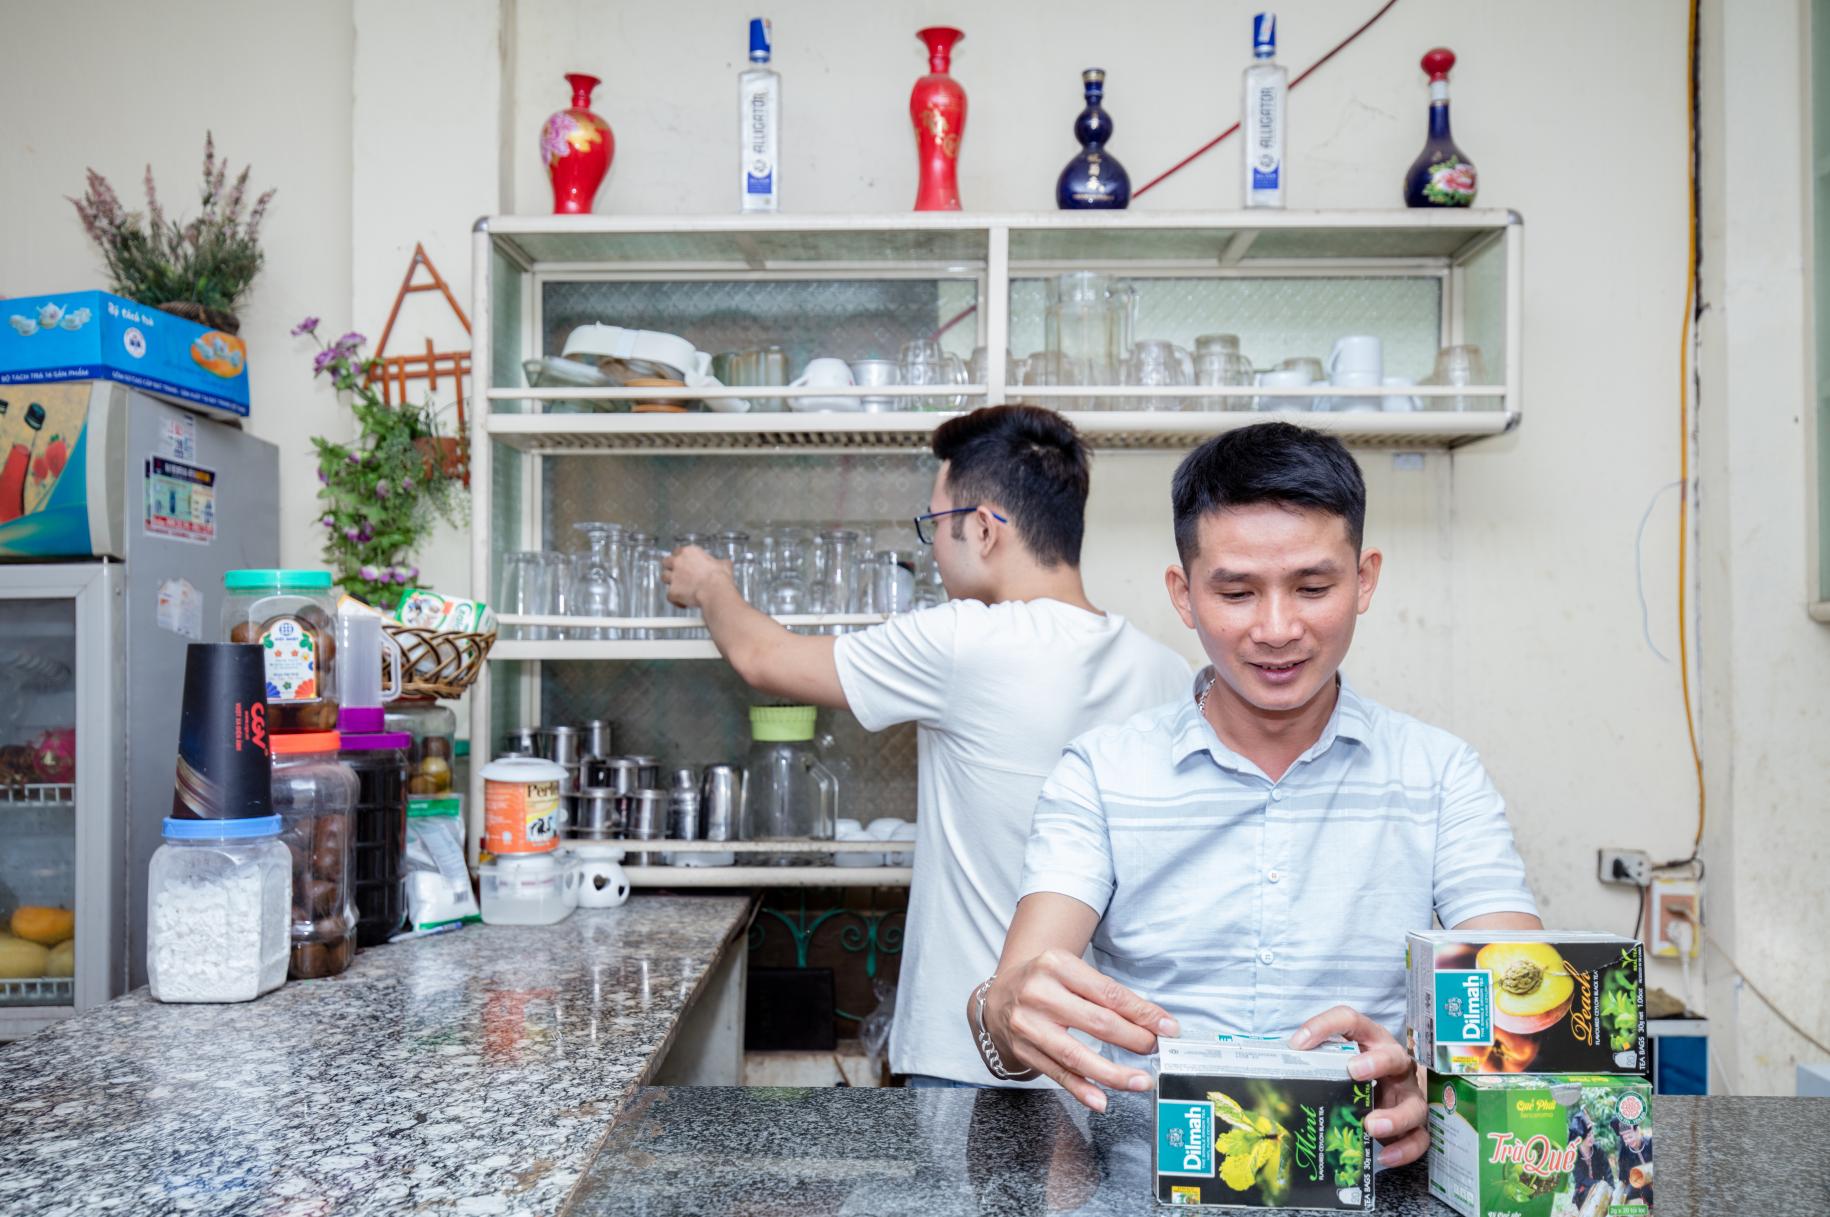 نجوين ترونج هونغ يقف عند منضدة المقهى الذي افتتحه كمساحة آمنة لمجتمع الميم في سون لا.